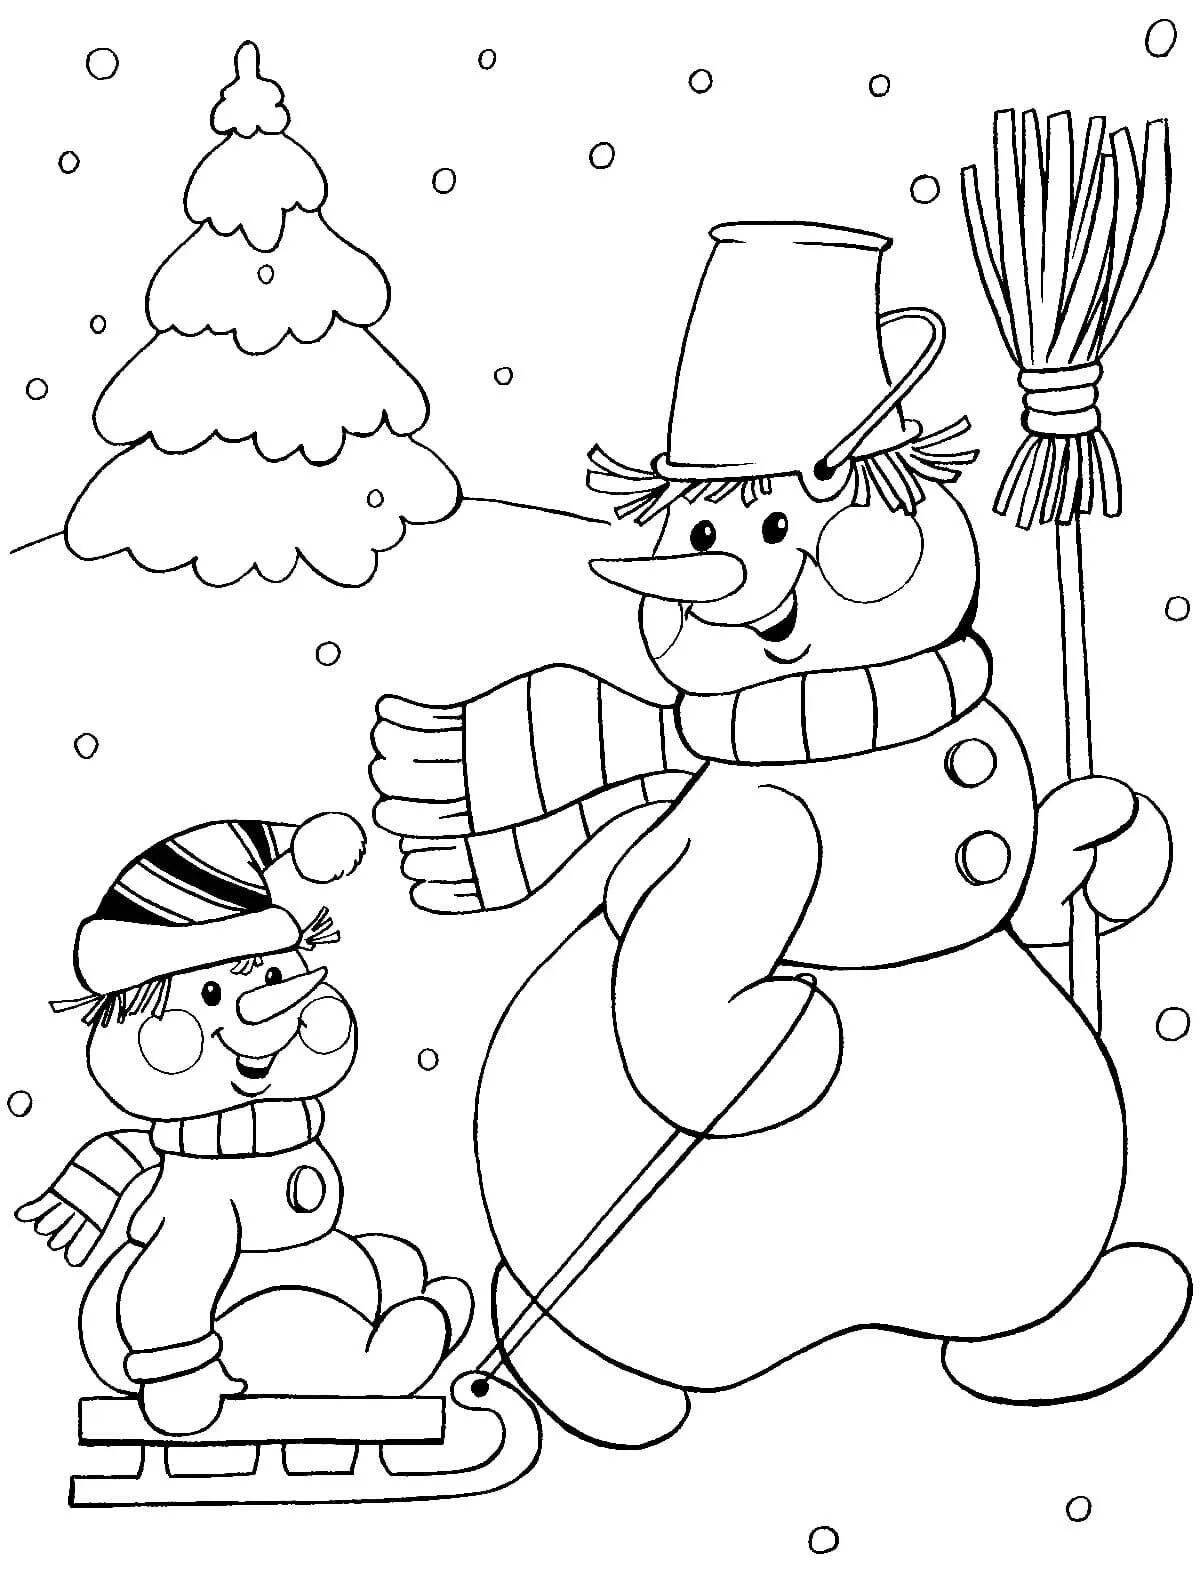 Забавная раскраска снеговик для детей 3-4 лет